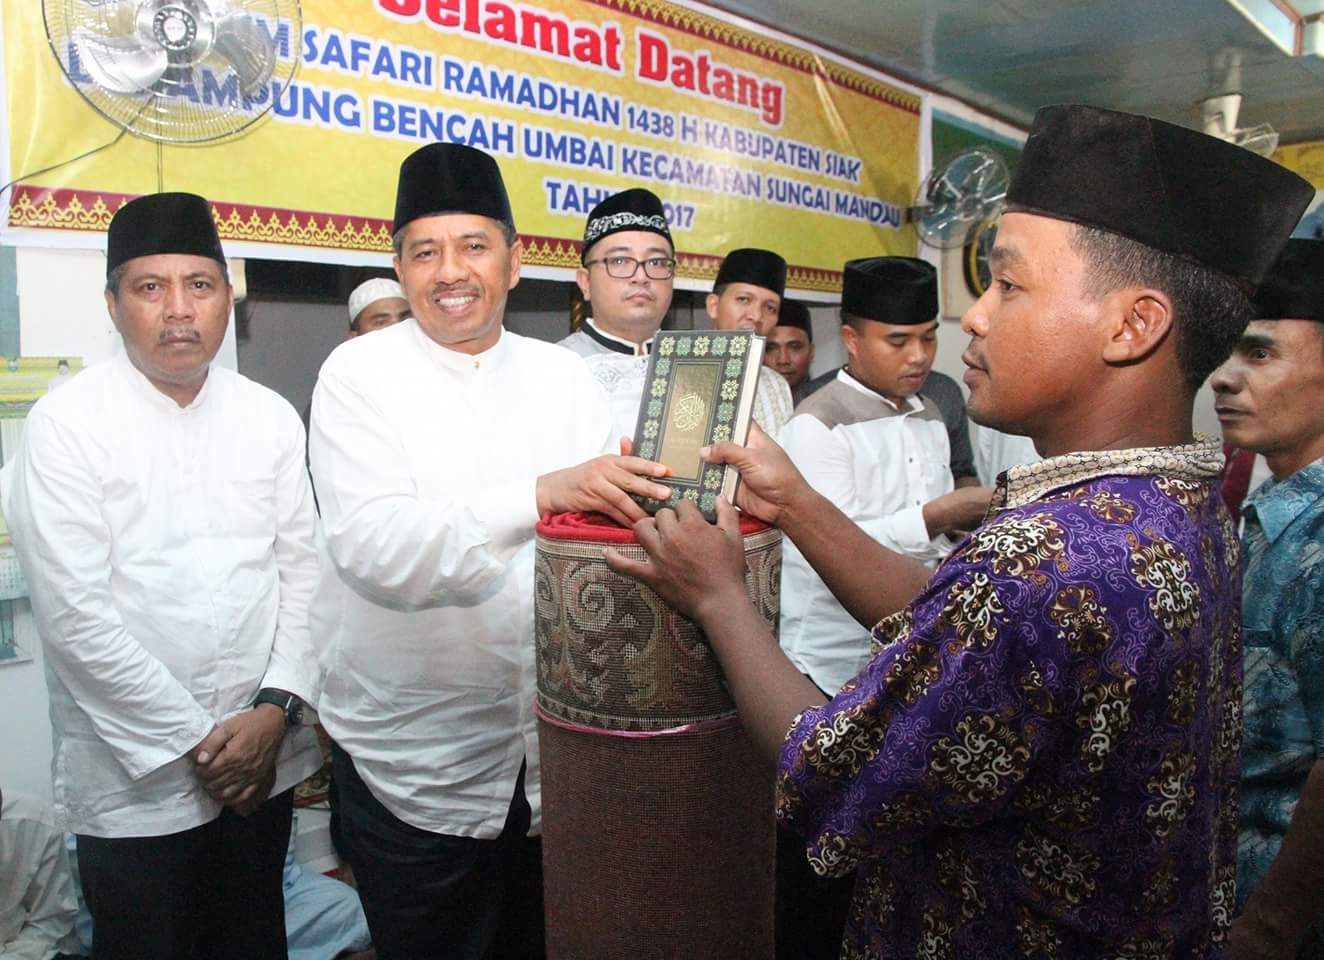 Tim Safari Ramadhan Kunjungi Kampung Bencah Umbai